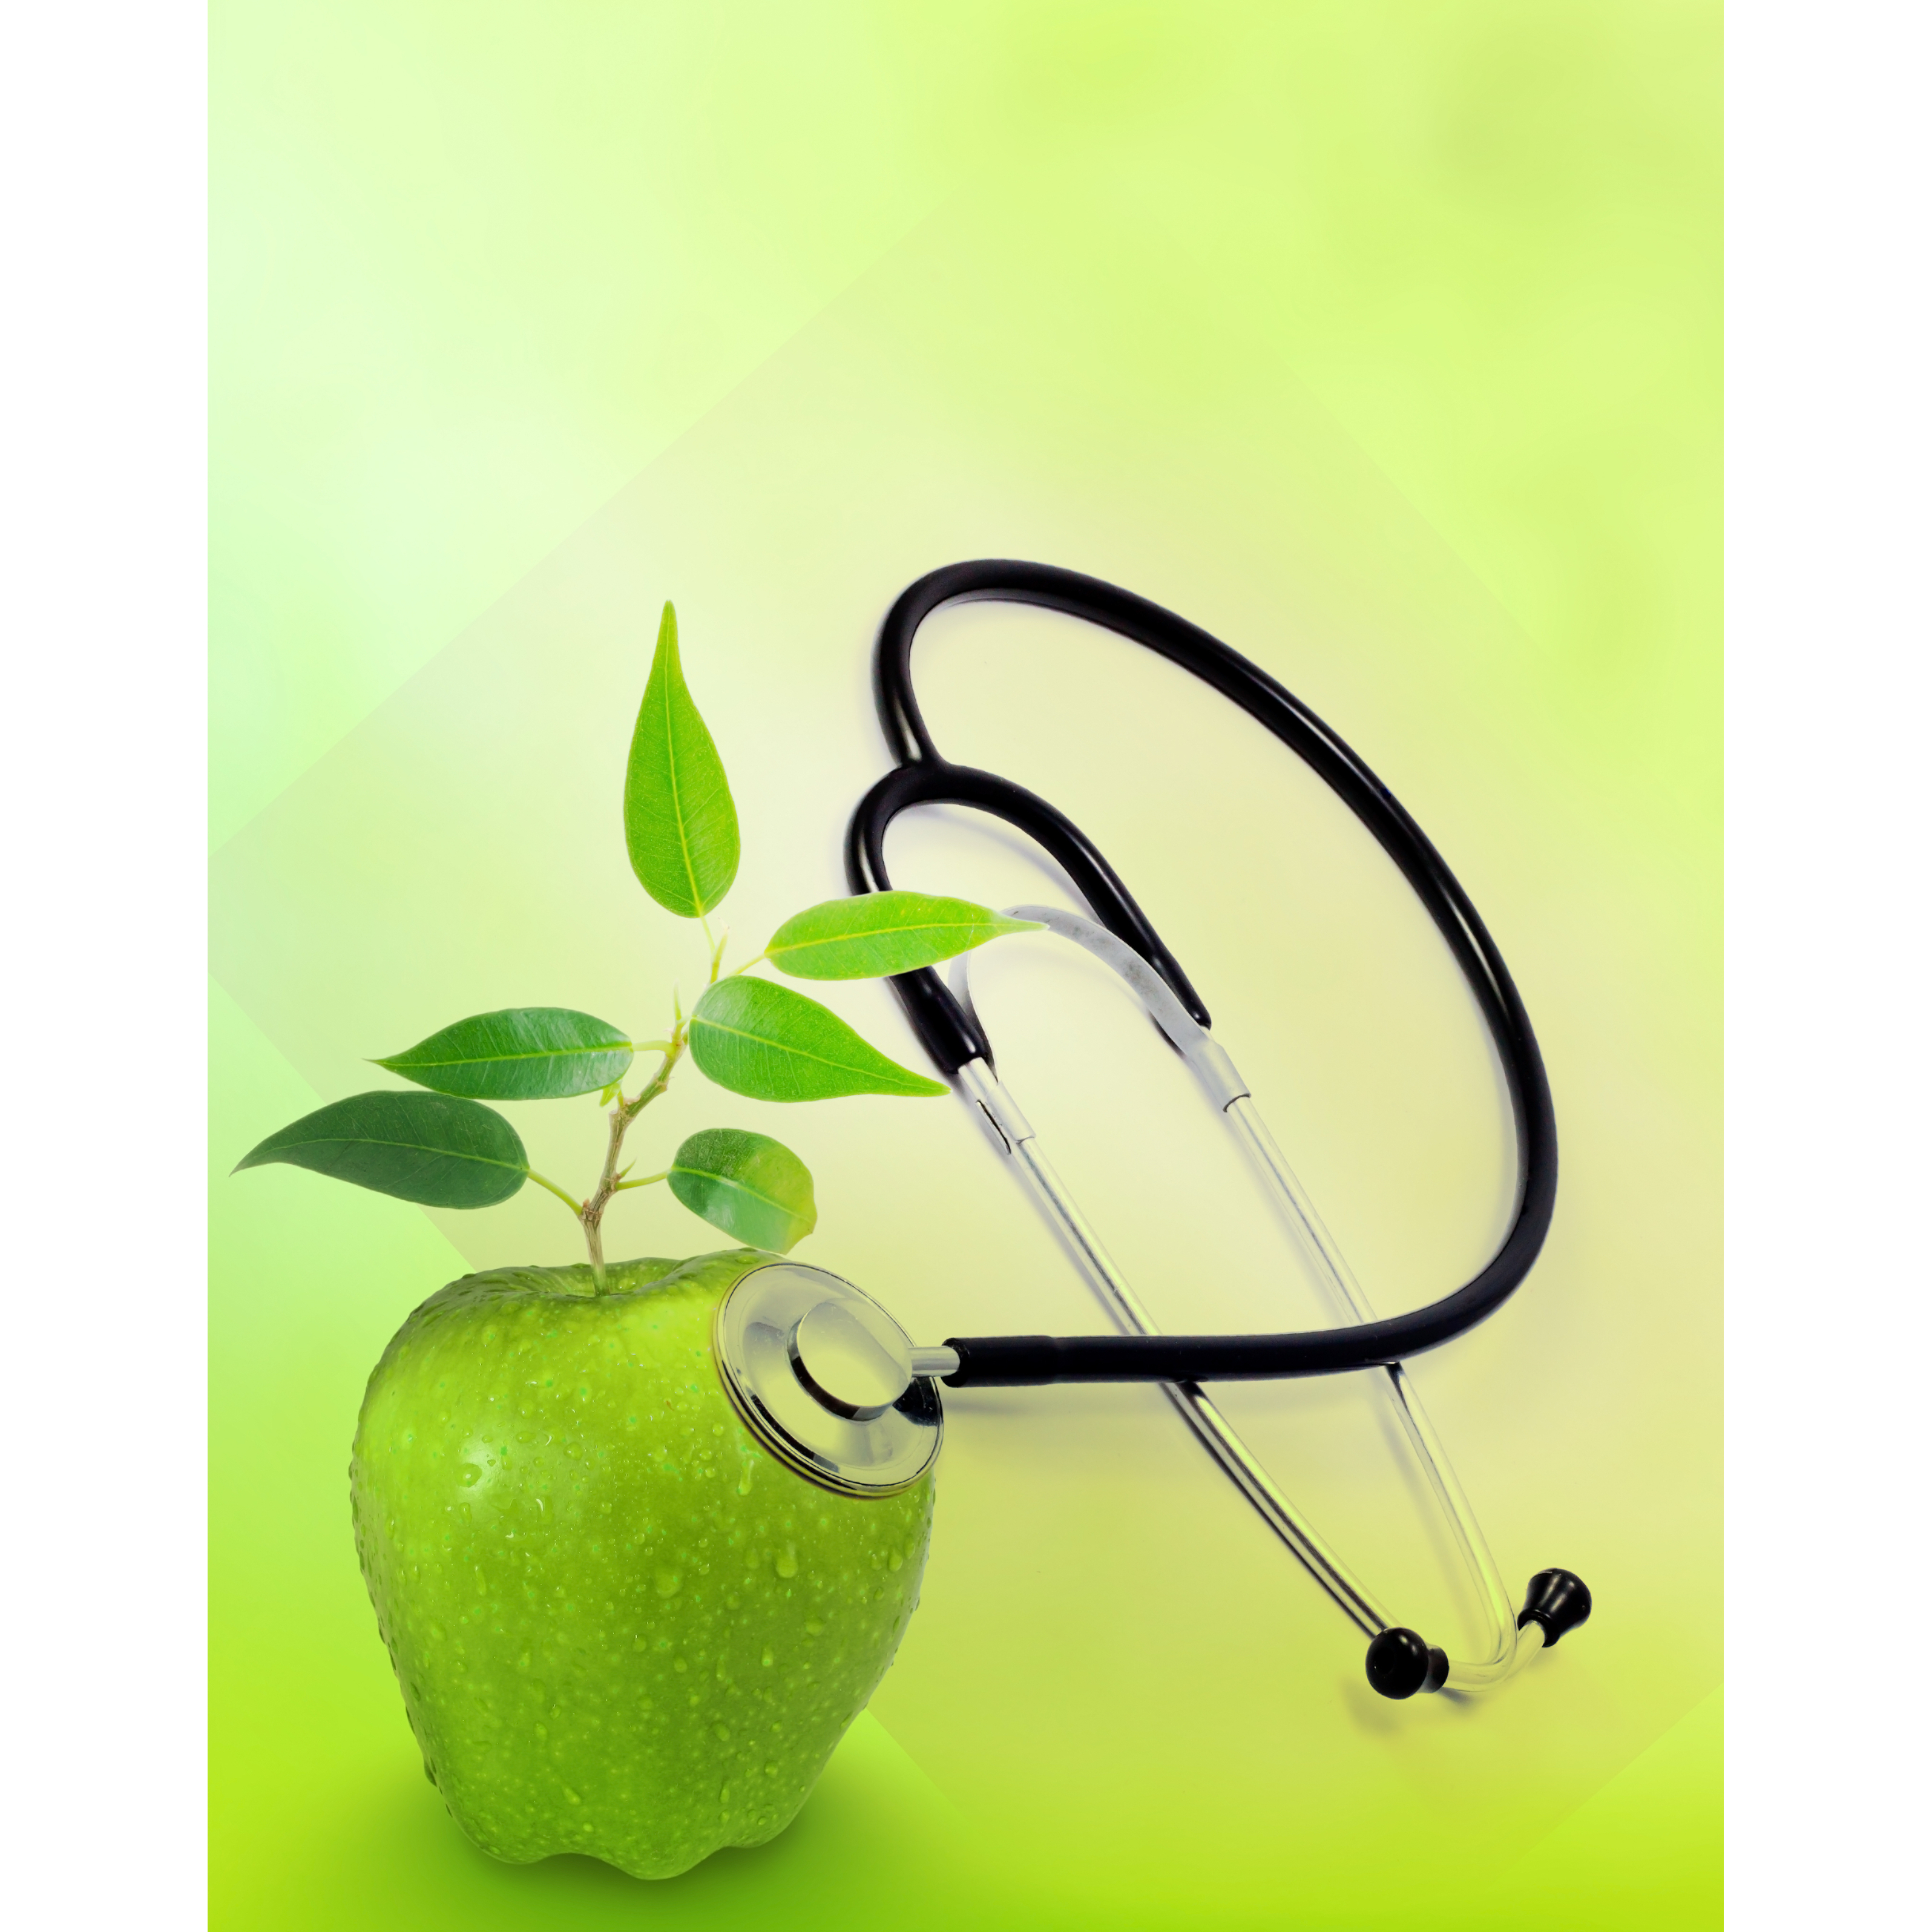 Яблоко в медицине. Медицина фон. Яблоко с стетоскопом. Здоровье медицина. Яблоко и стетоскоп и цветы.